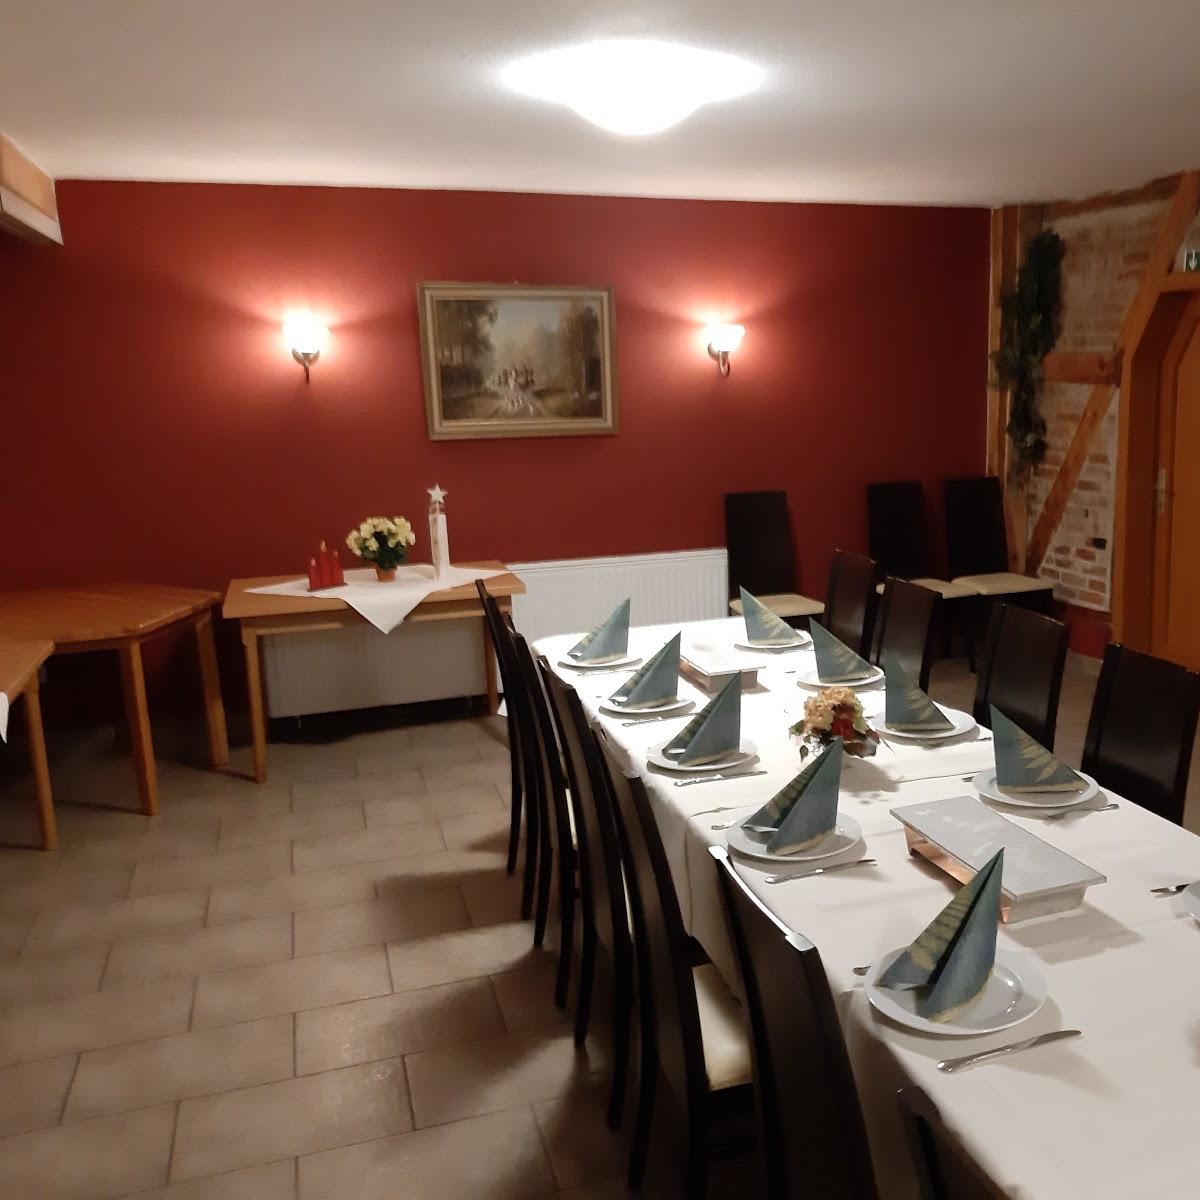 Restaurant "Schinkenscheune in Billerbeck - Marc u. Thorsten Schlimme GbR" in  Einbeck